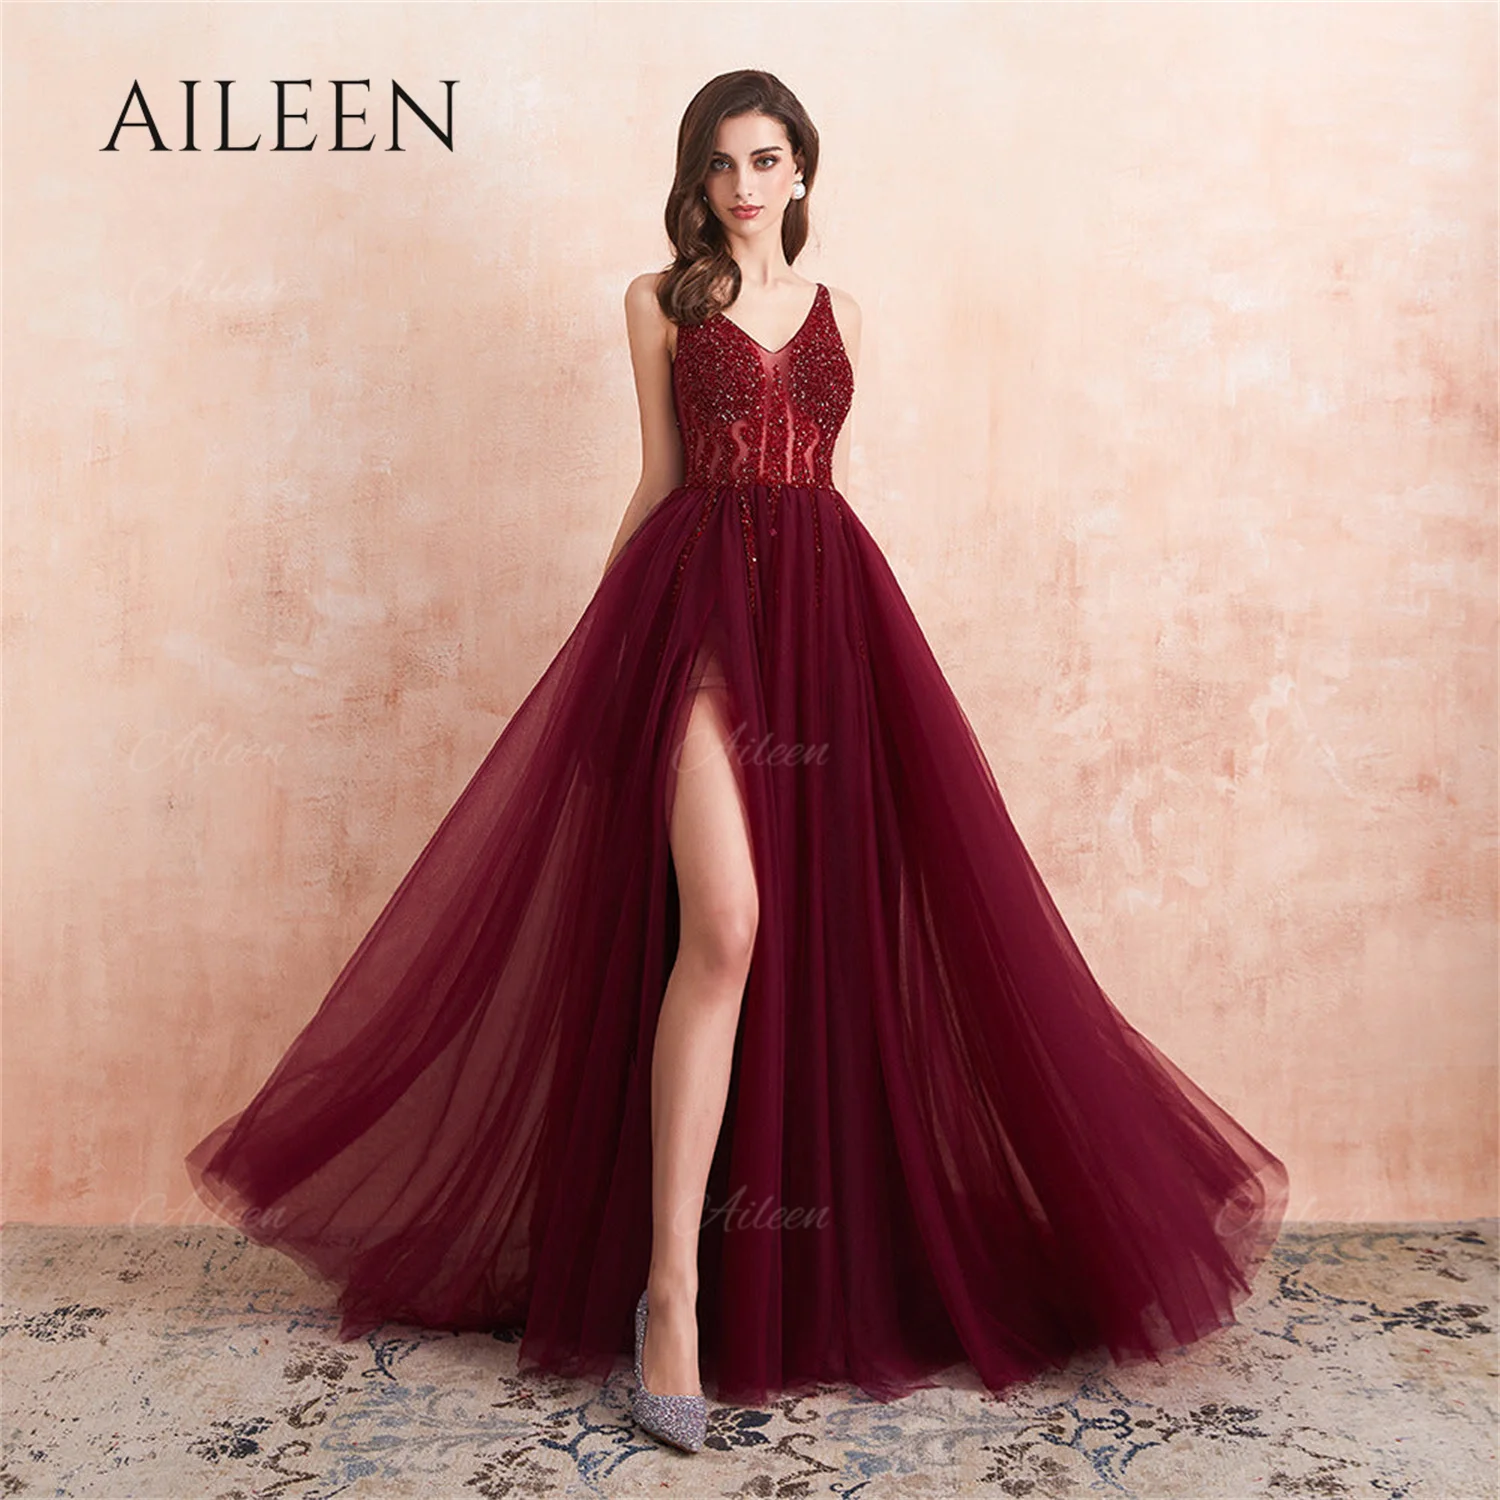 

Aileen элегантное платье для женщин, вечернее платье из бисера, шифоновое платье с красными боковыми разрезами, изящные готические платья на заказ